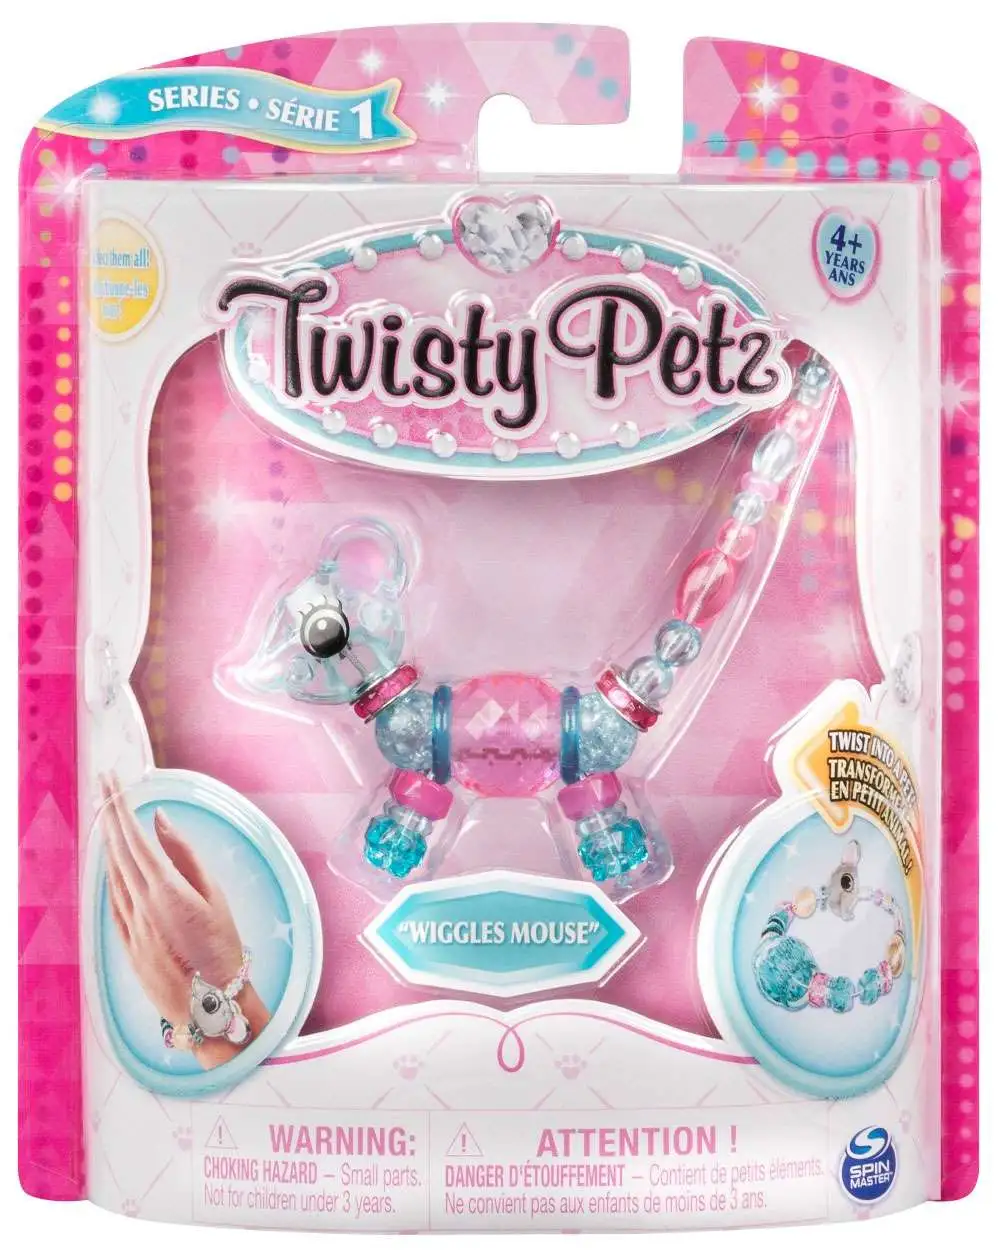 Twisty Petz Jubilee Giraffe Twist Into a Pet Toy Series 1 Bracelet Spin Master for sale online 